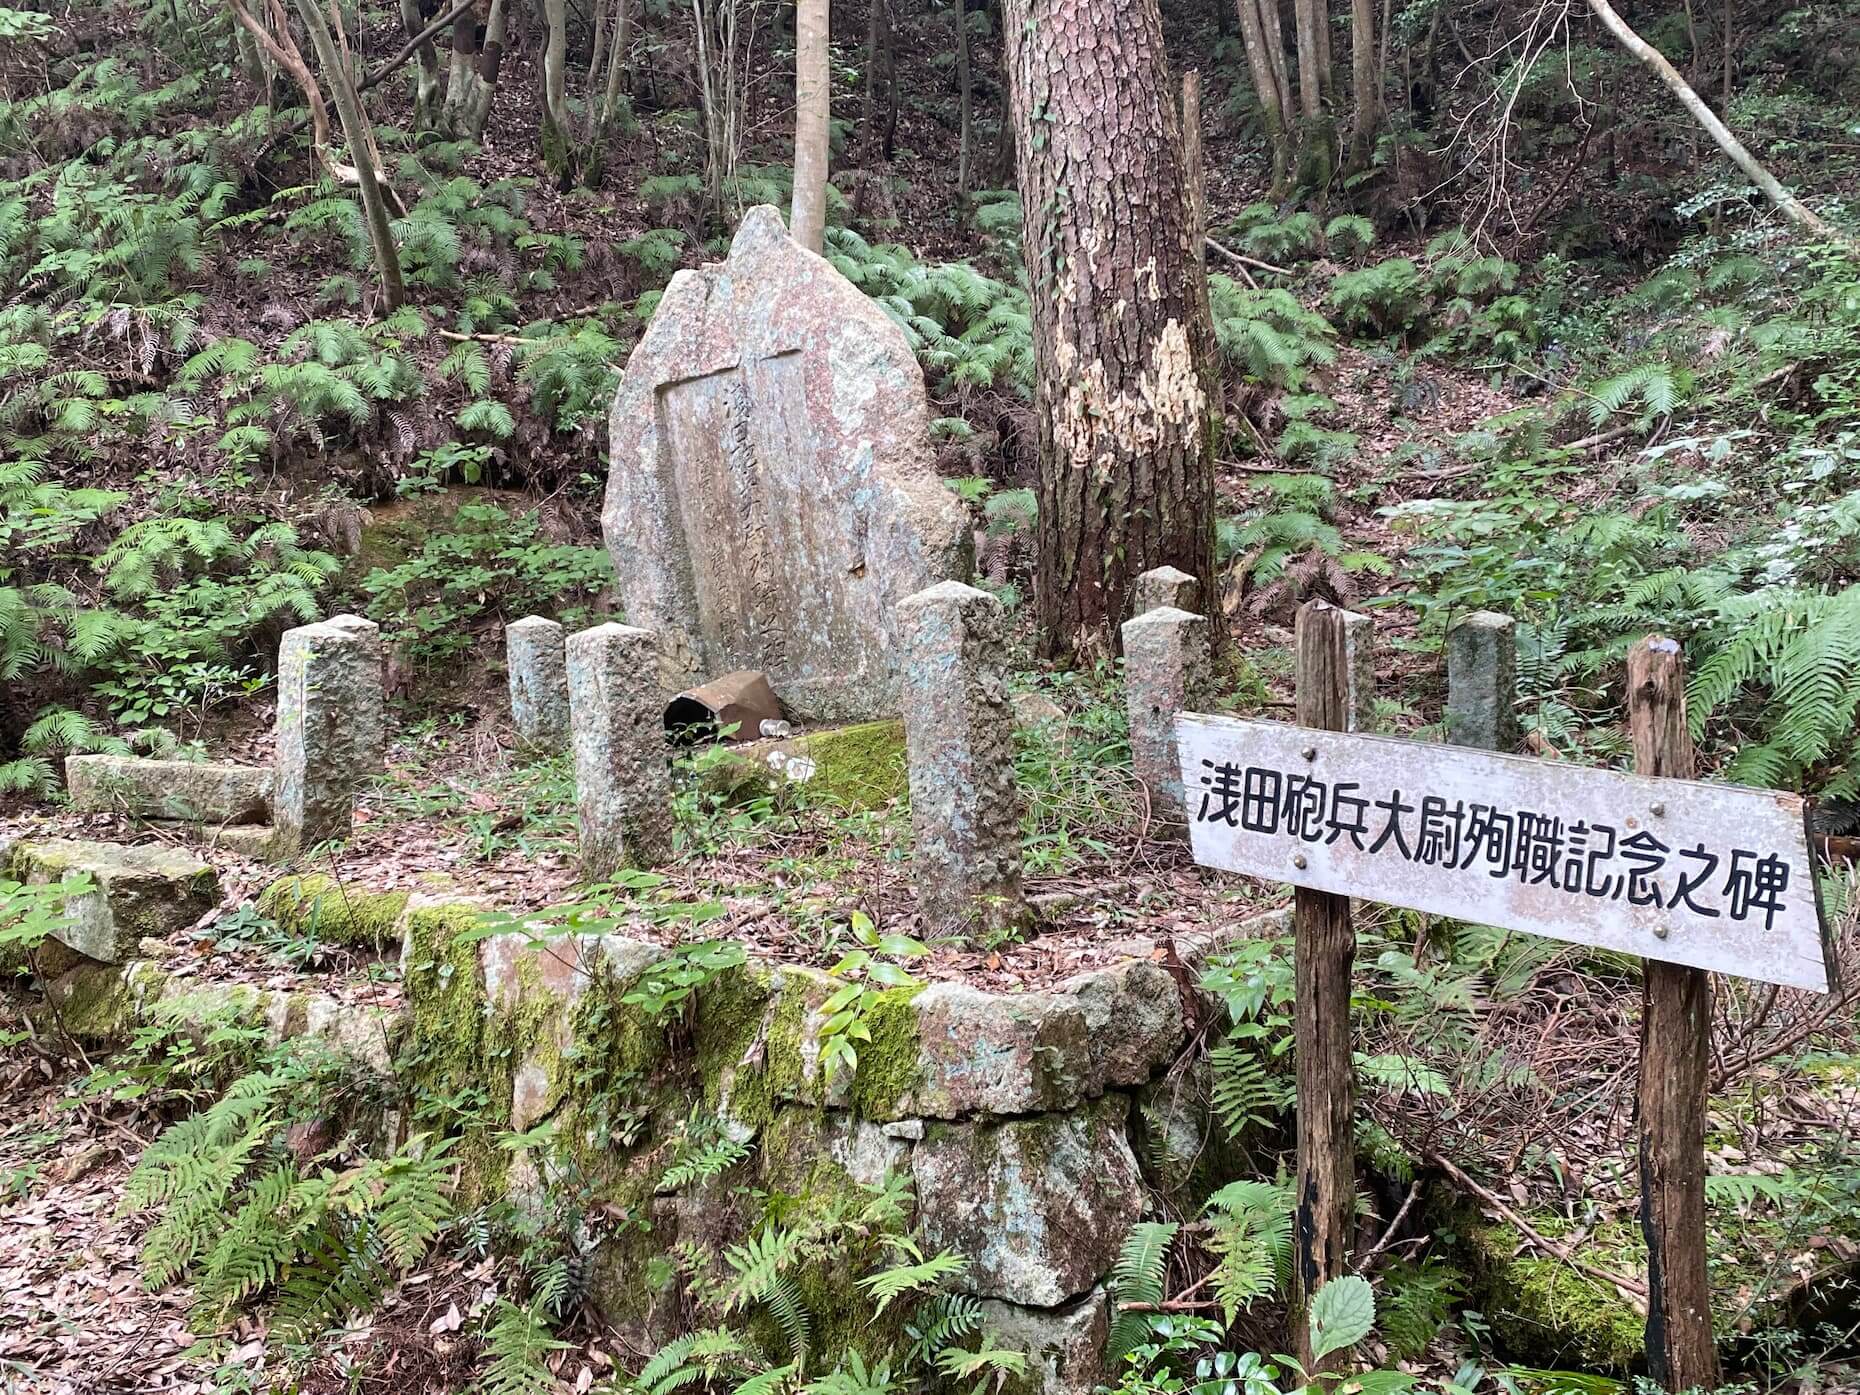 飛行機事故で殉職した浅田砲兵大尉を悼む石碑